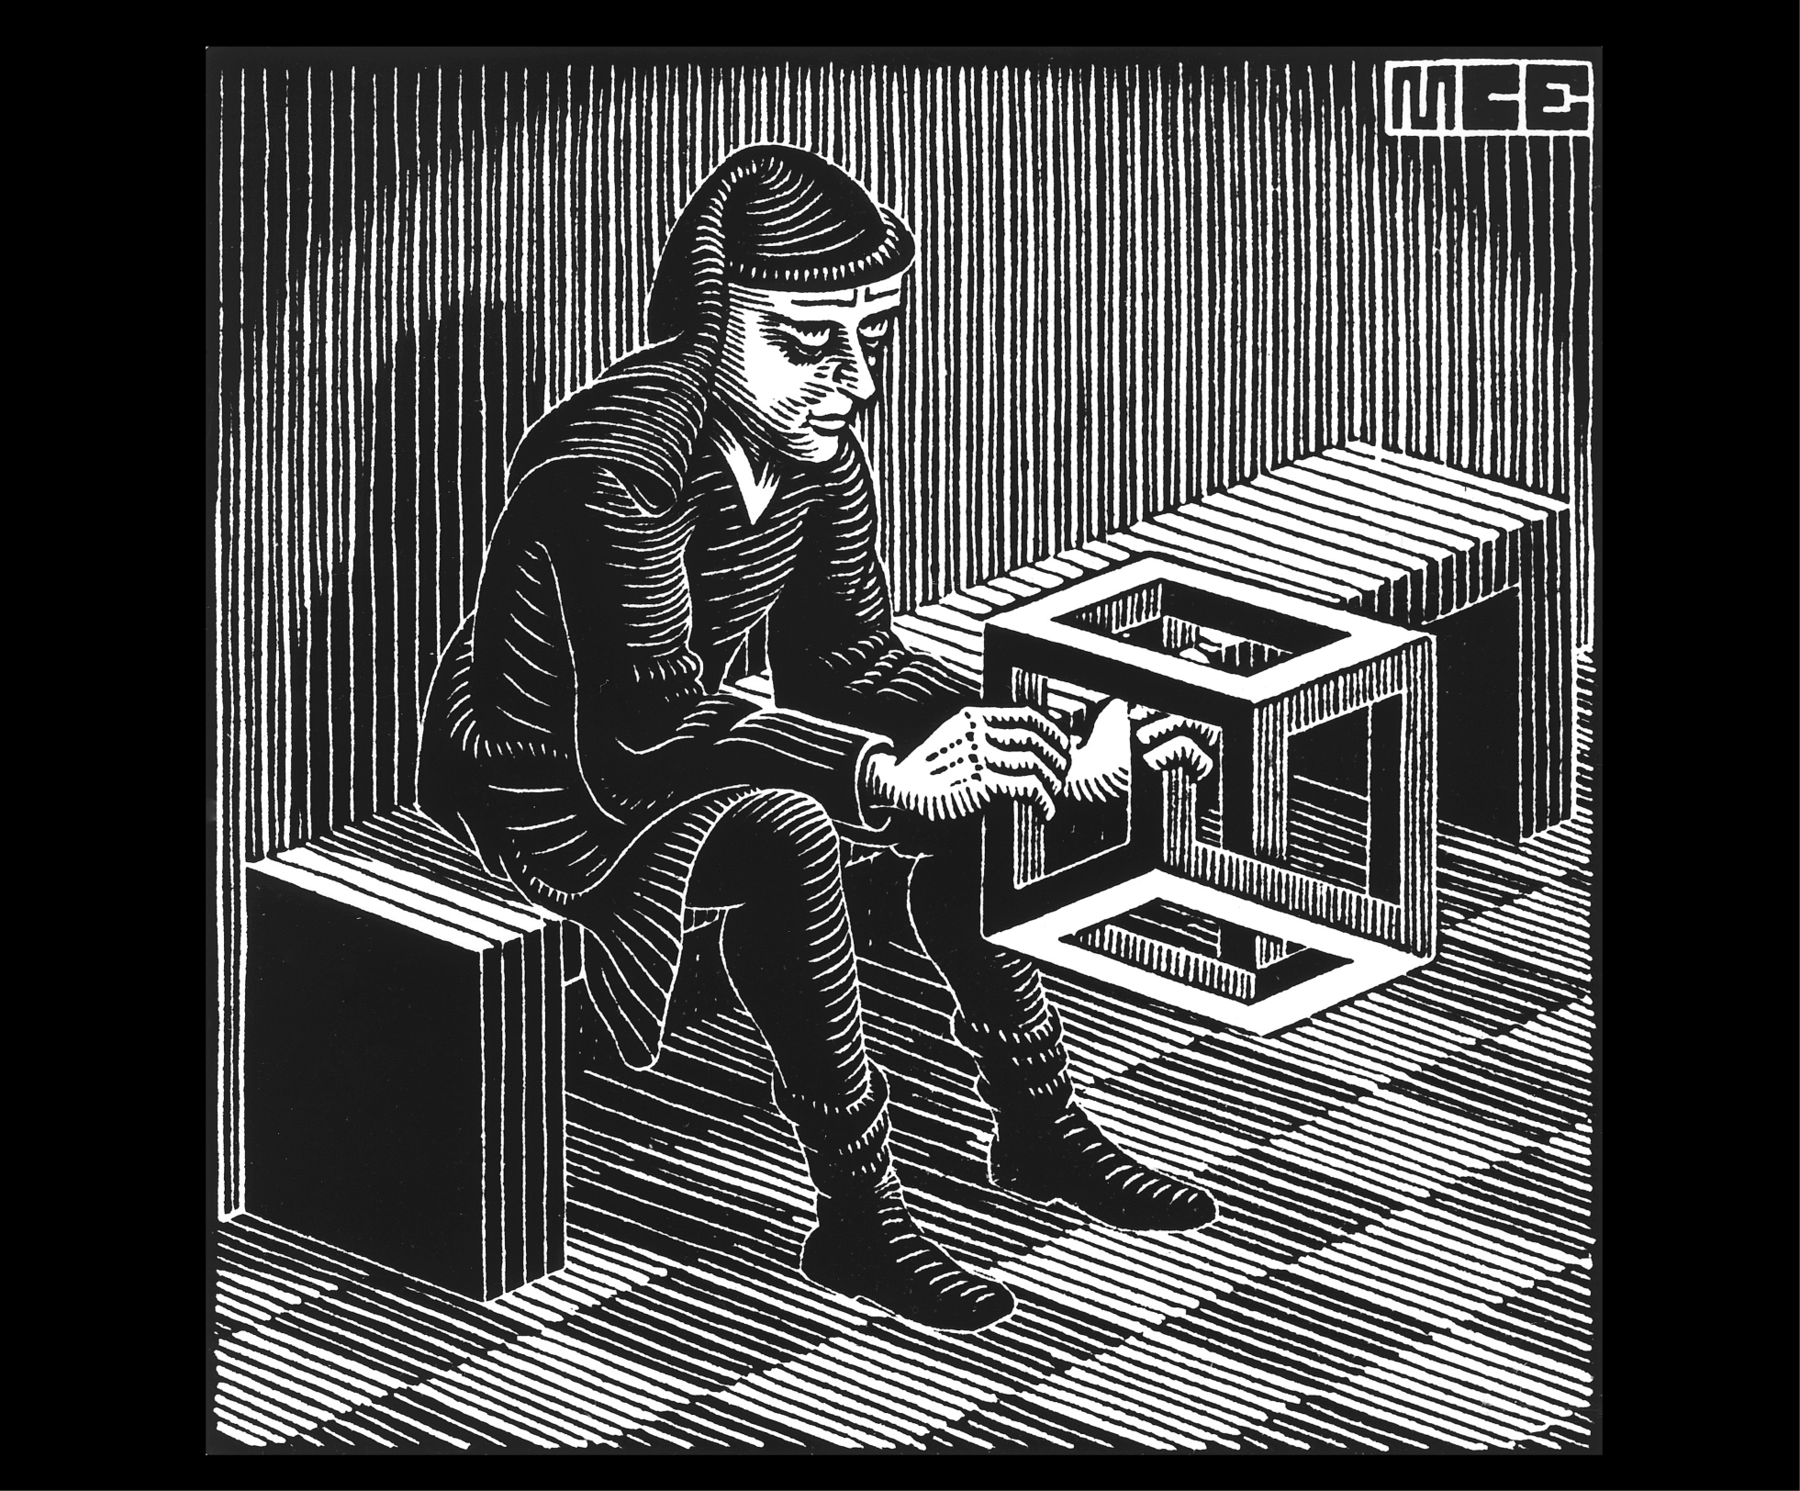 Ilustração. Gravura em preto e branco. Homem de lenço na cabeça, camisa, calça e botas curtas. Ele está sentado em um banco segurando um objeto cúbico. A gravura é listrada em preto e branco.